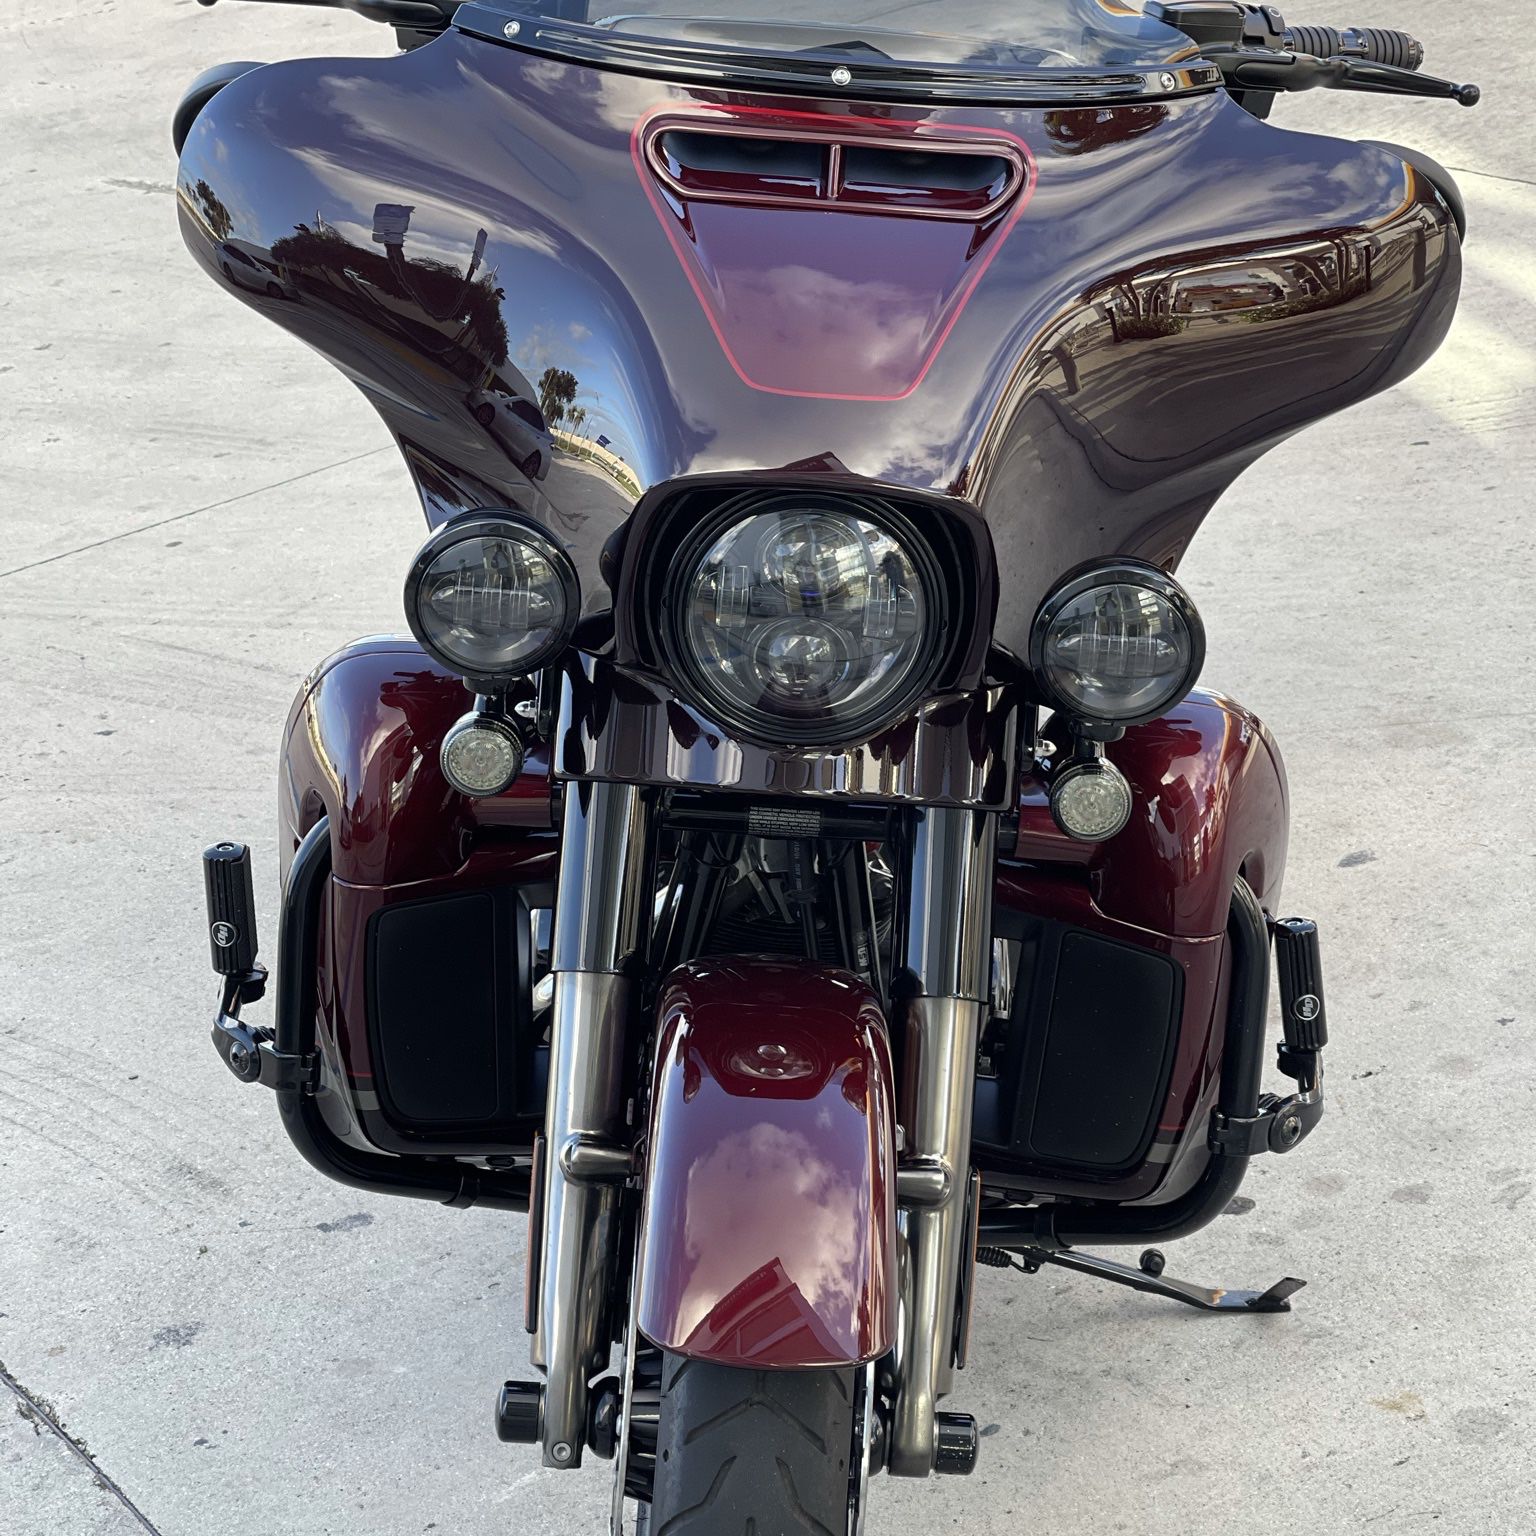 2019 Harley Davidson CVO Street Glide